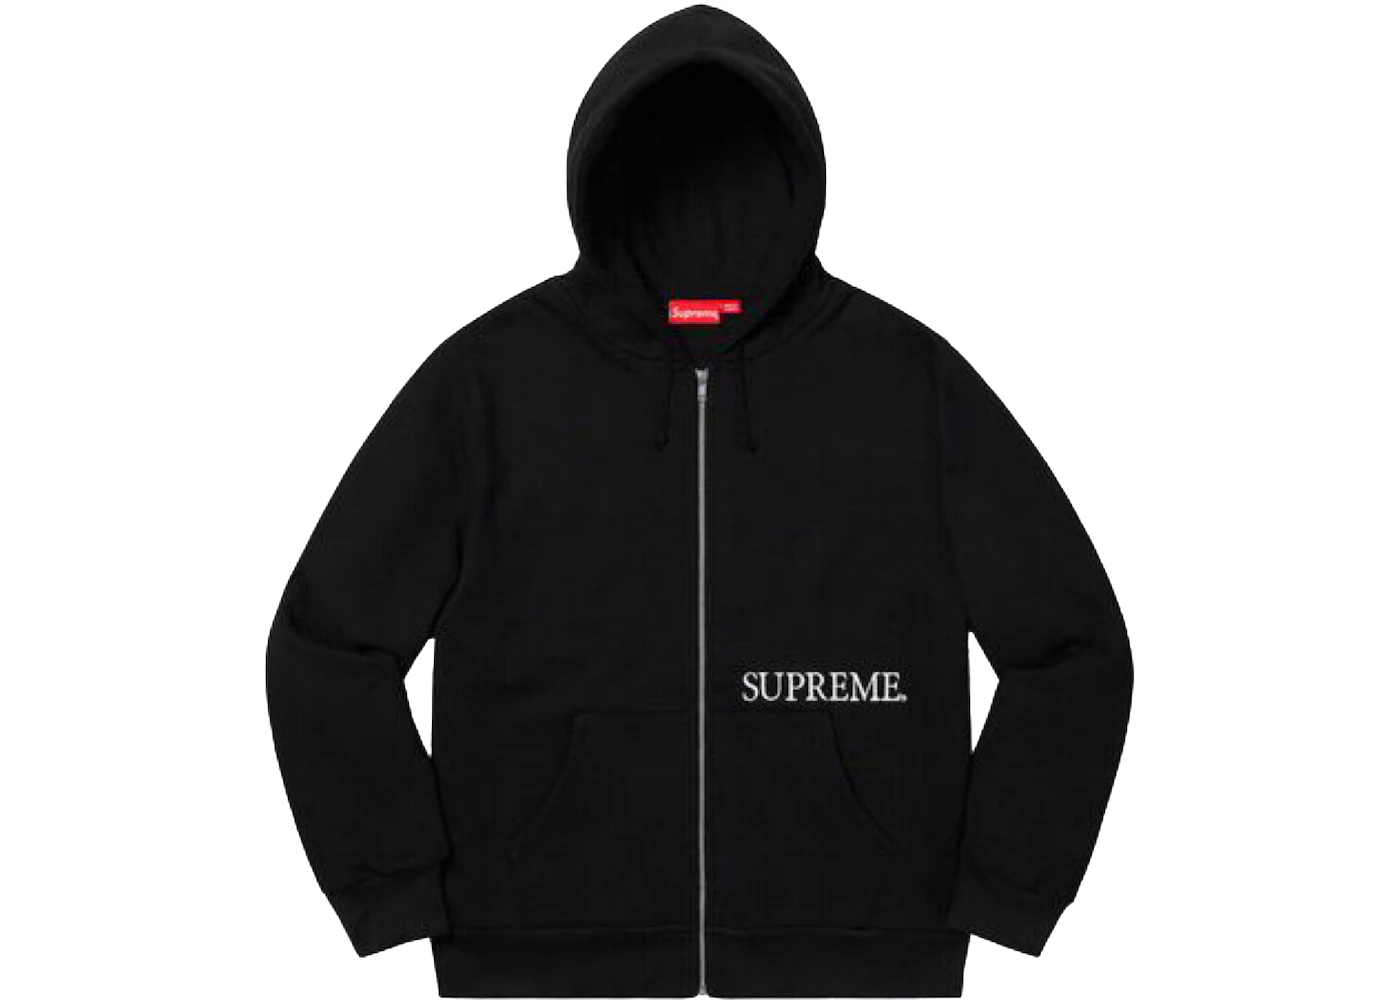 Supreme Thermal Zip Up Hooded Sweatshirt Black - FW19